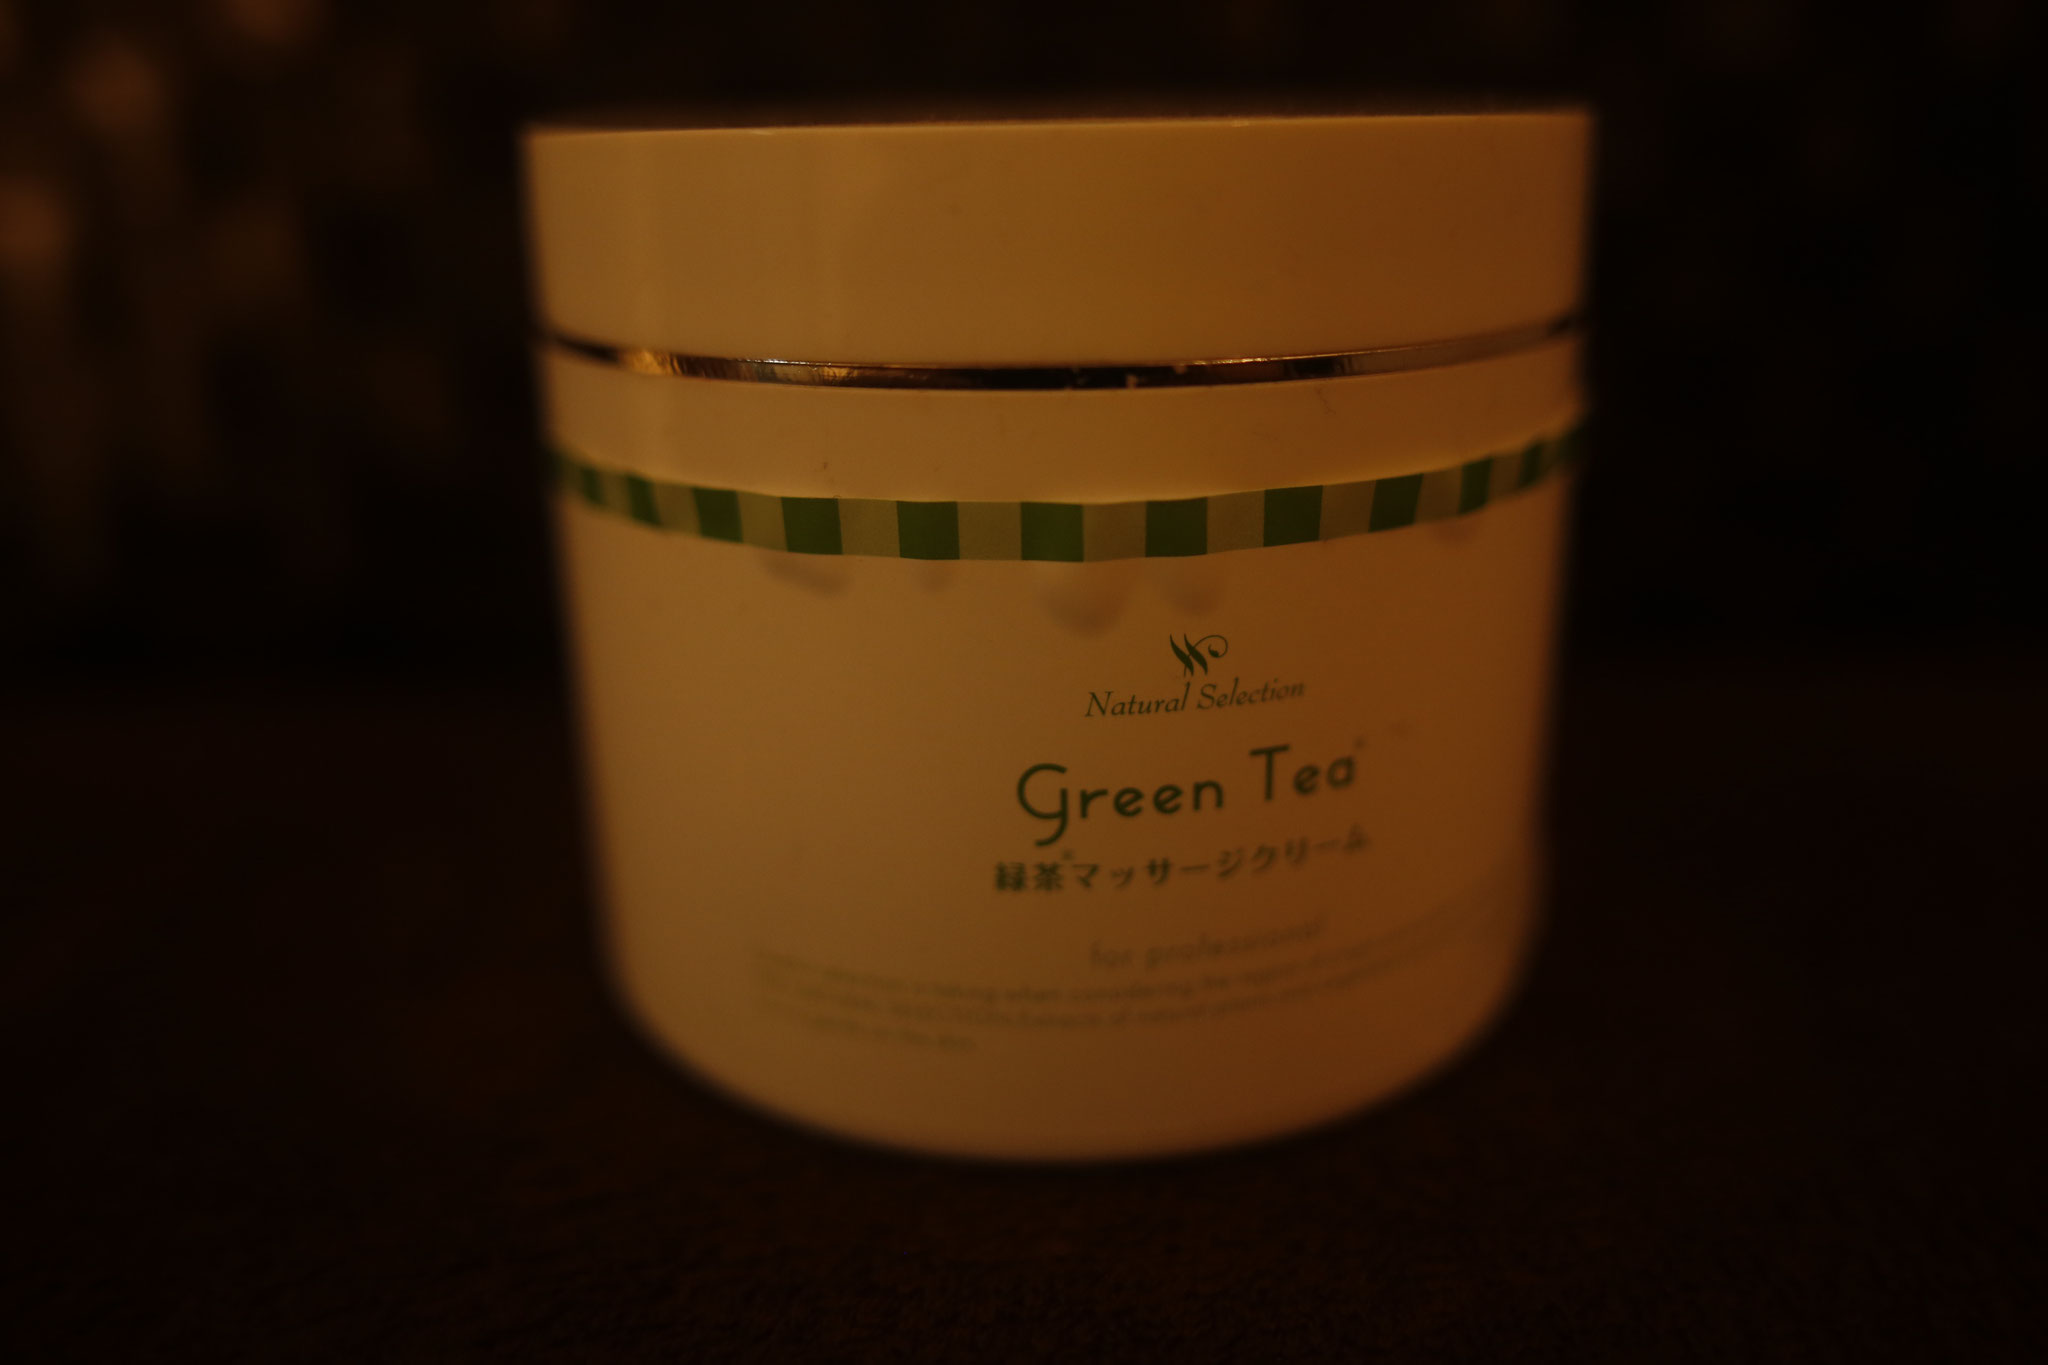 ノビのある緑茶クリームを使っています。